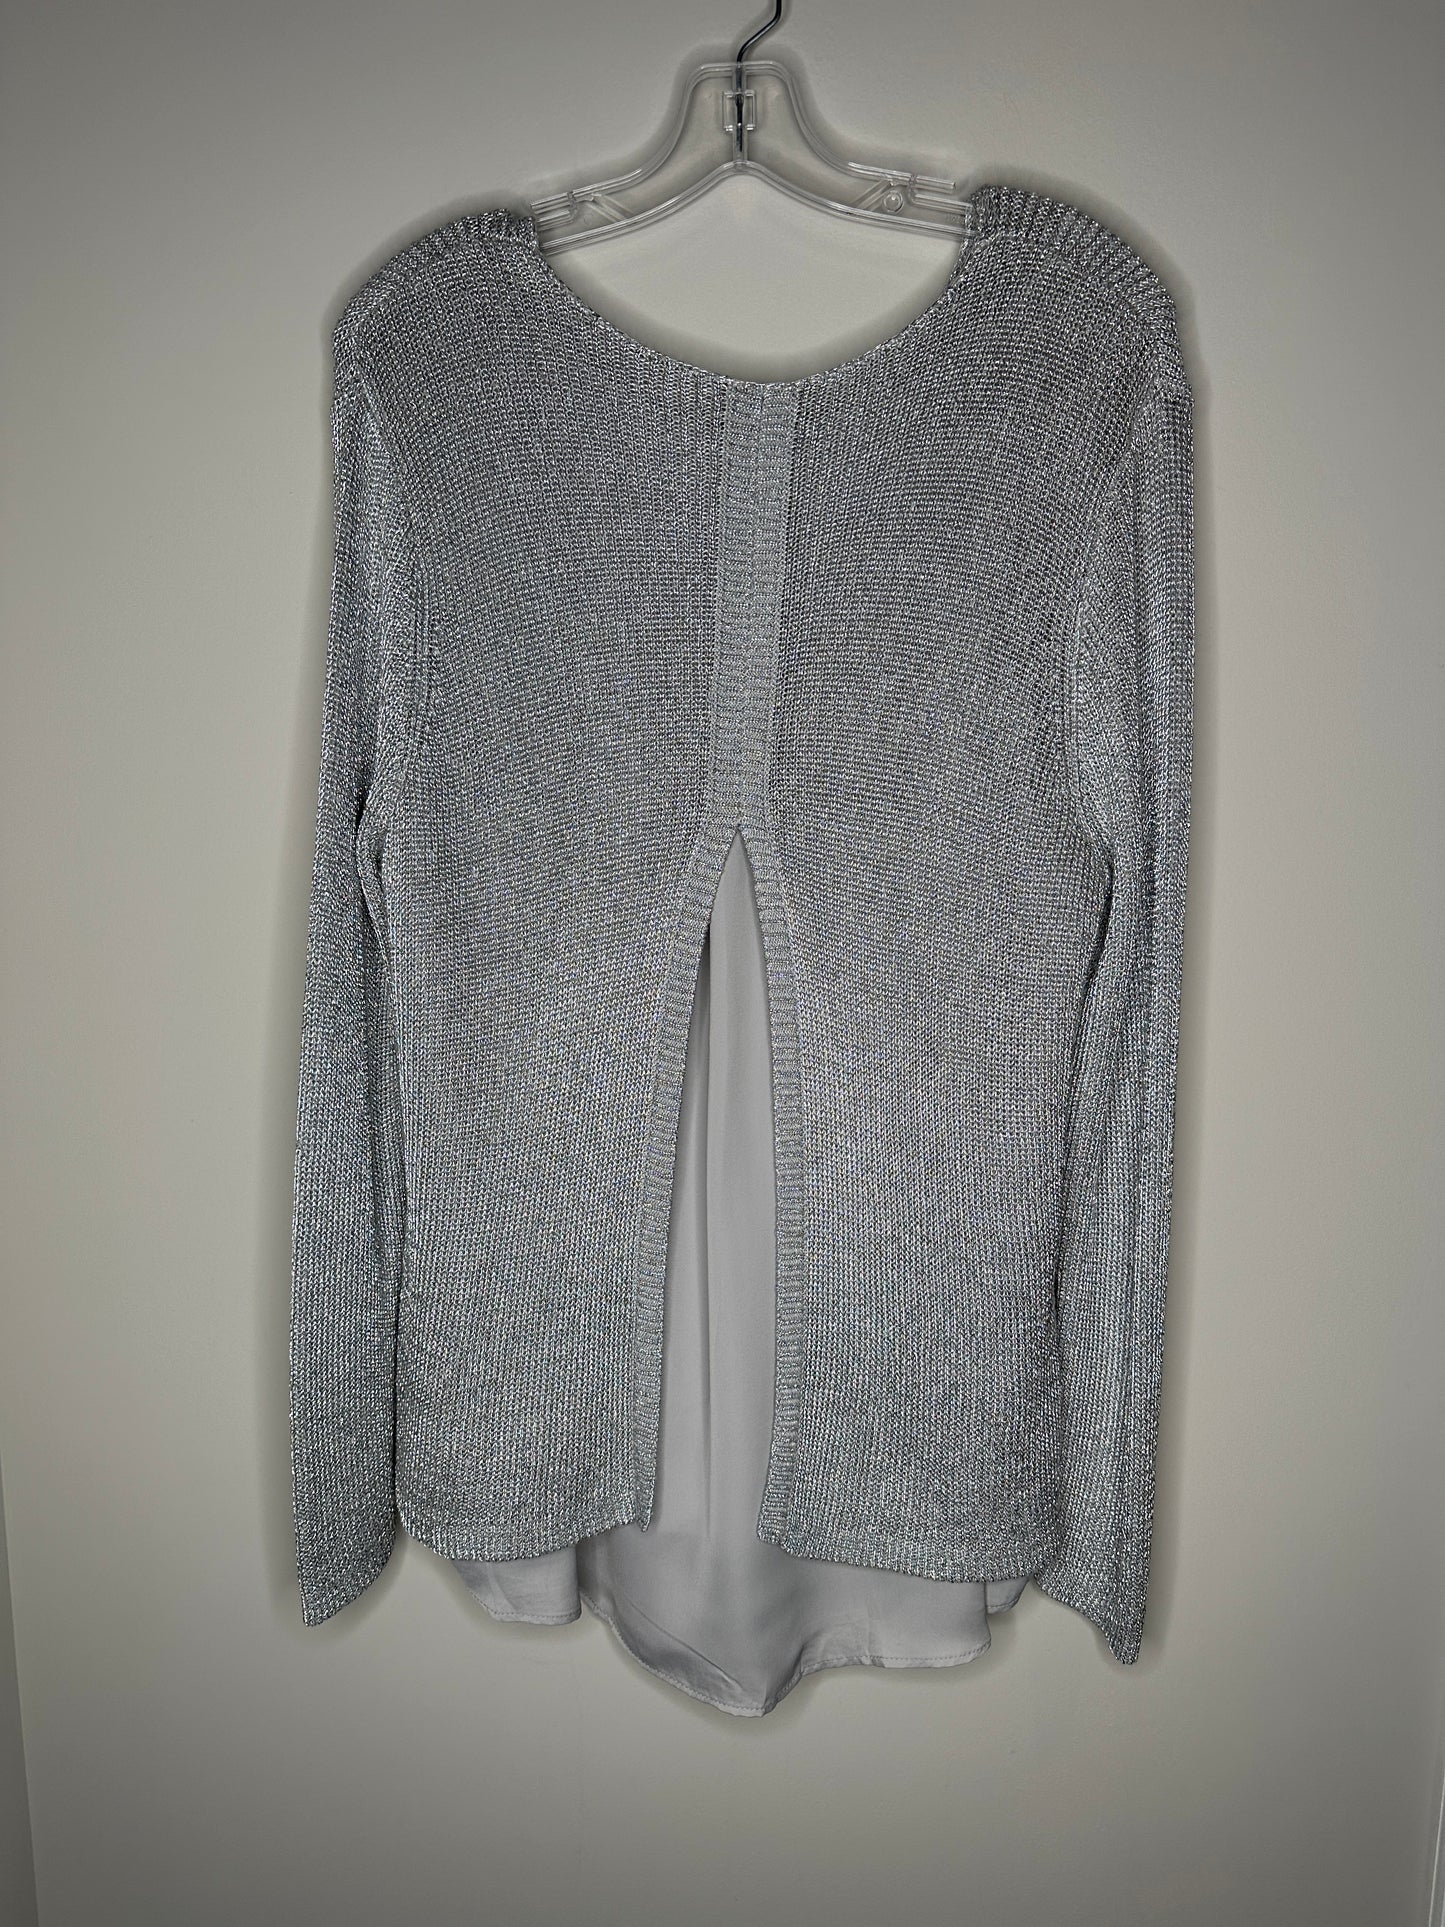 Chico’s Size 3 (XL) Silver Gray Shine Stitch Aindri Pullover Sweater, new/NWT